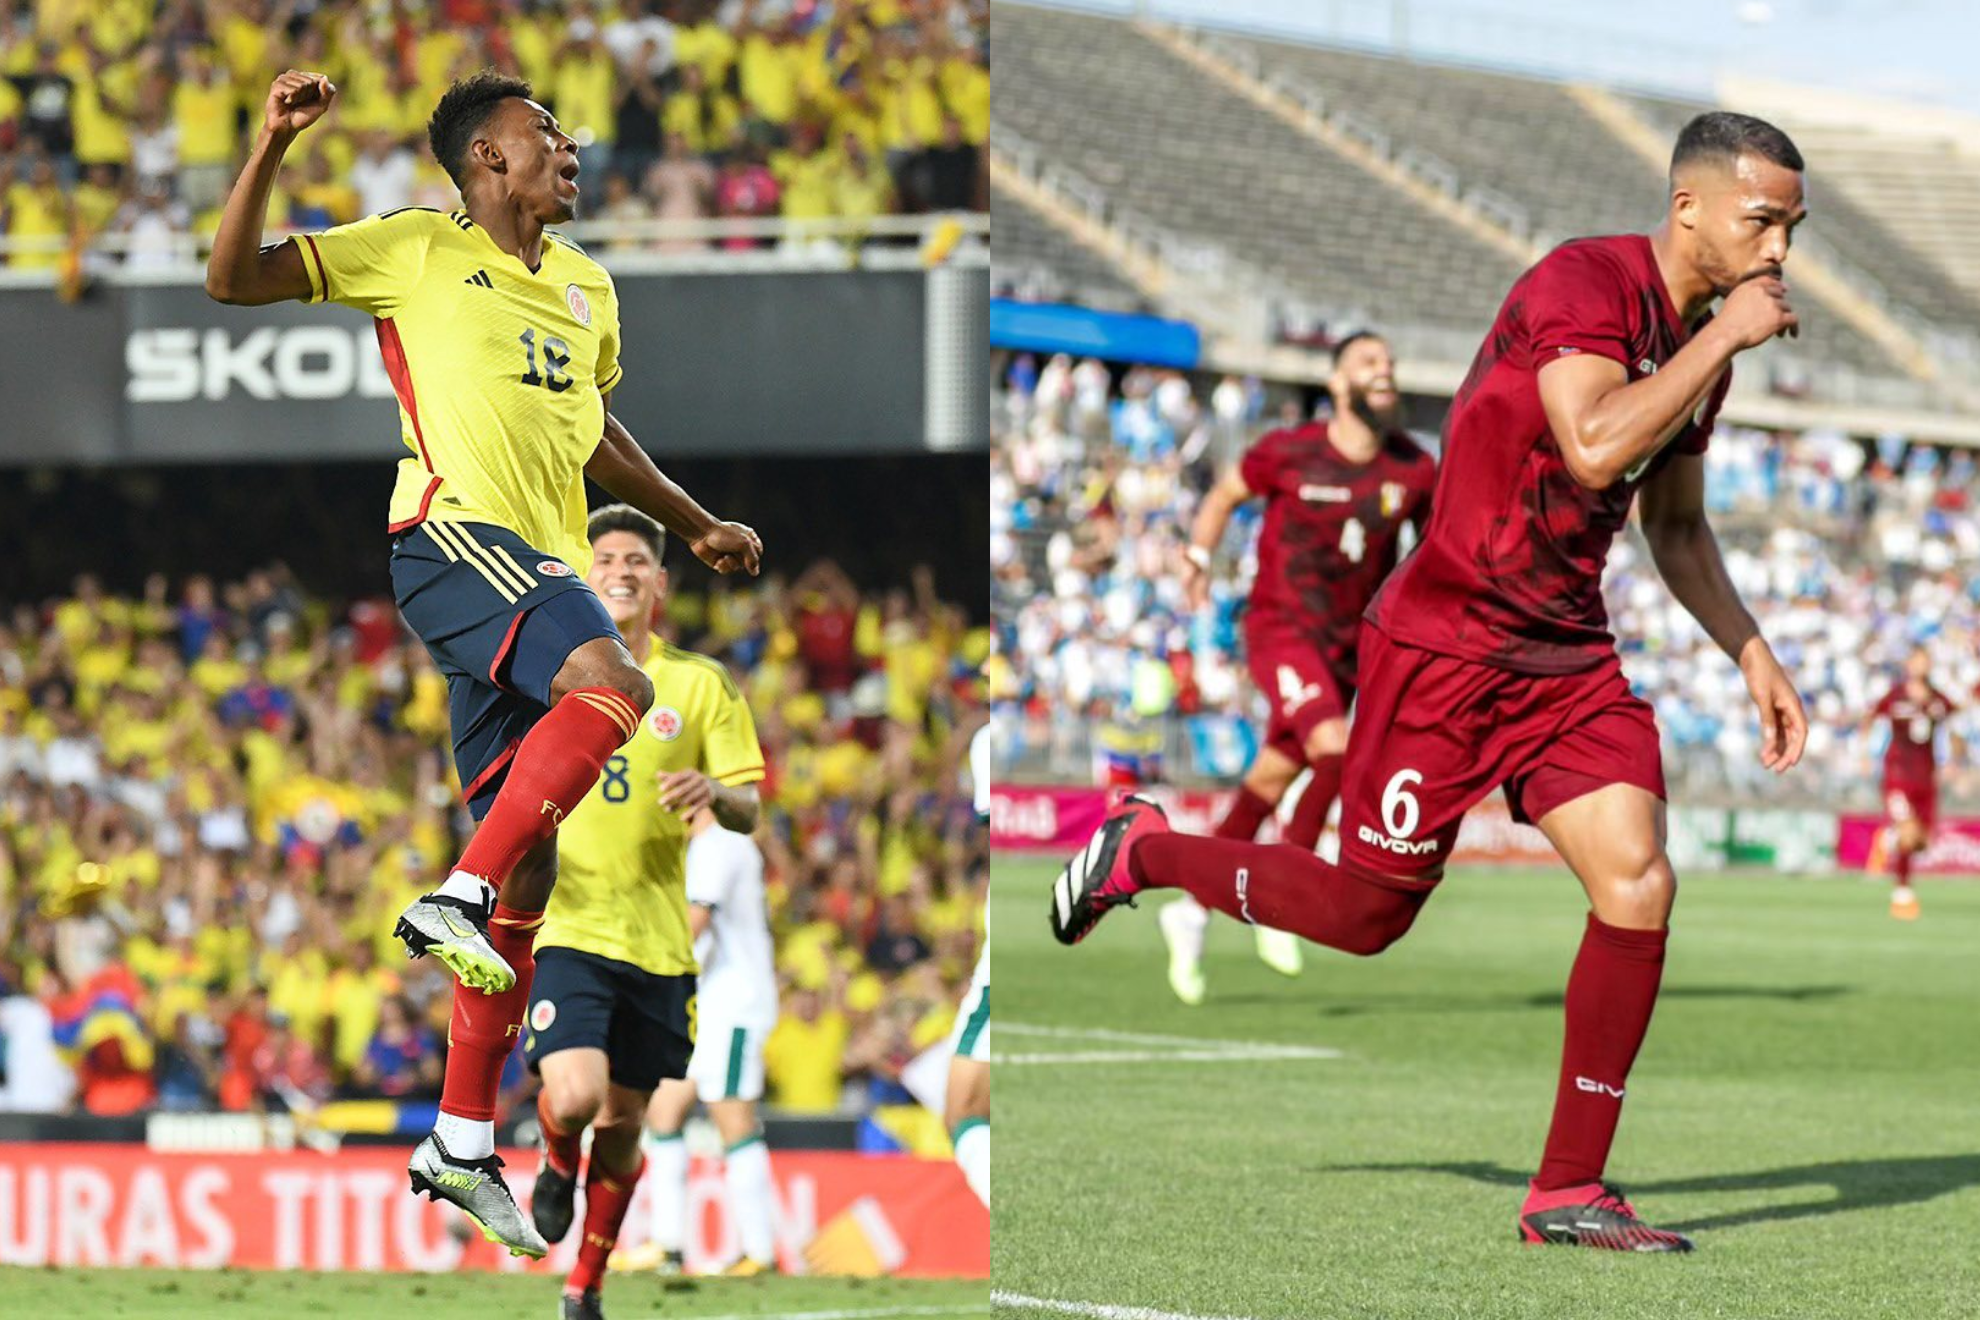 Resumen, resultado y goles del Colombia - Venezuela | Eliminatorias sudamericana Mundial 2026 en directo hoy